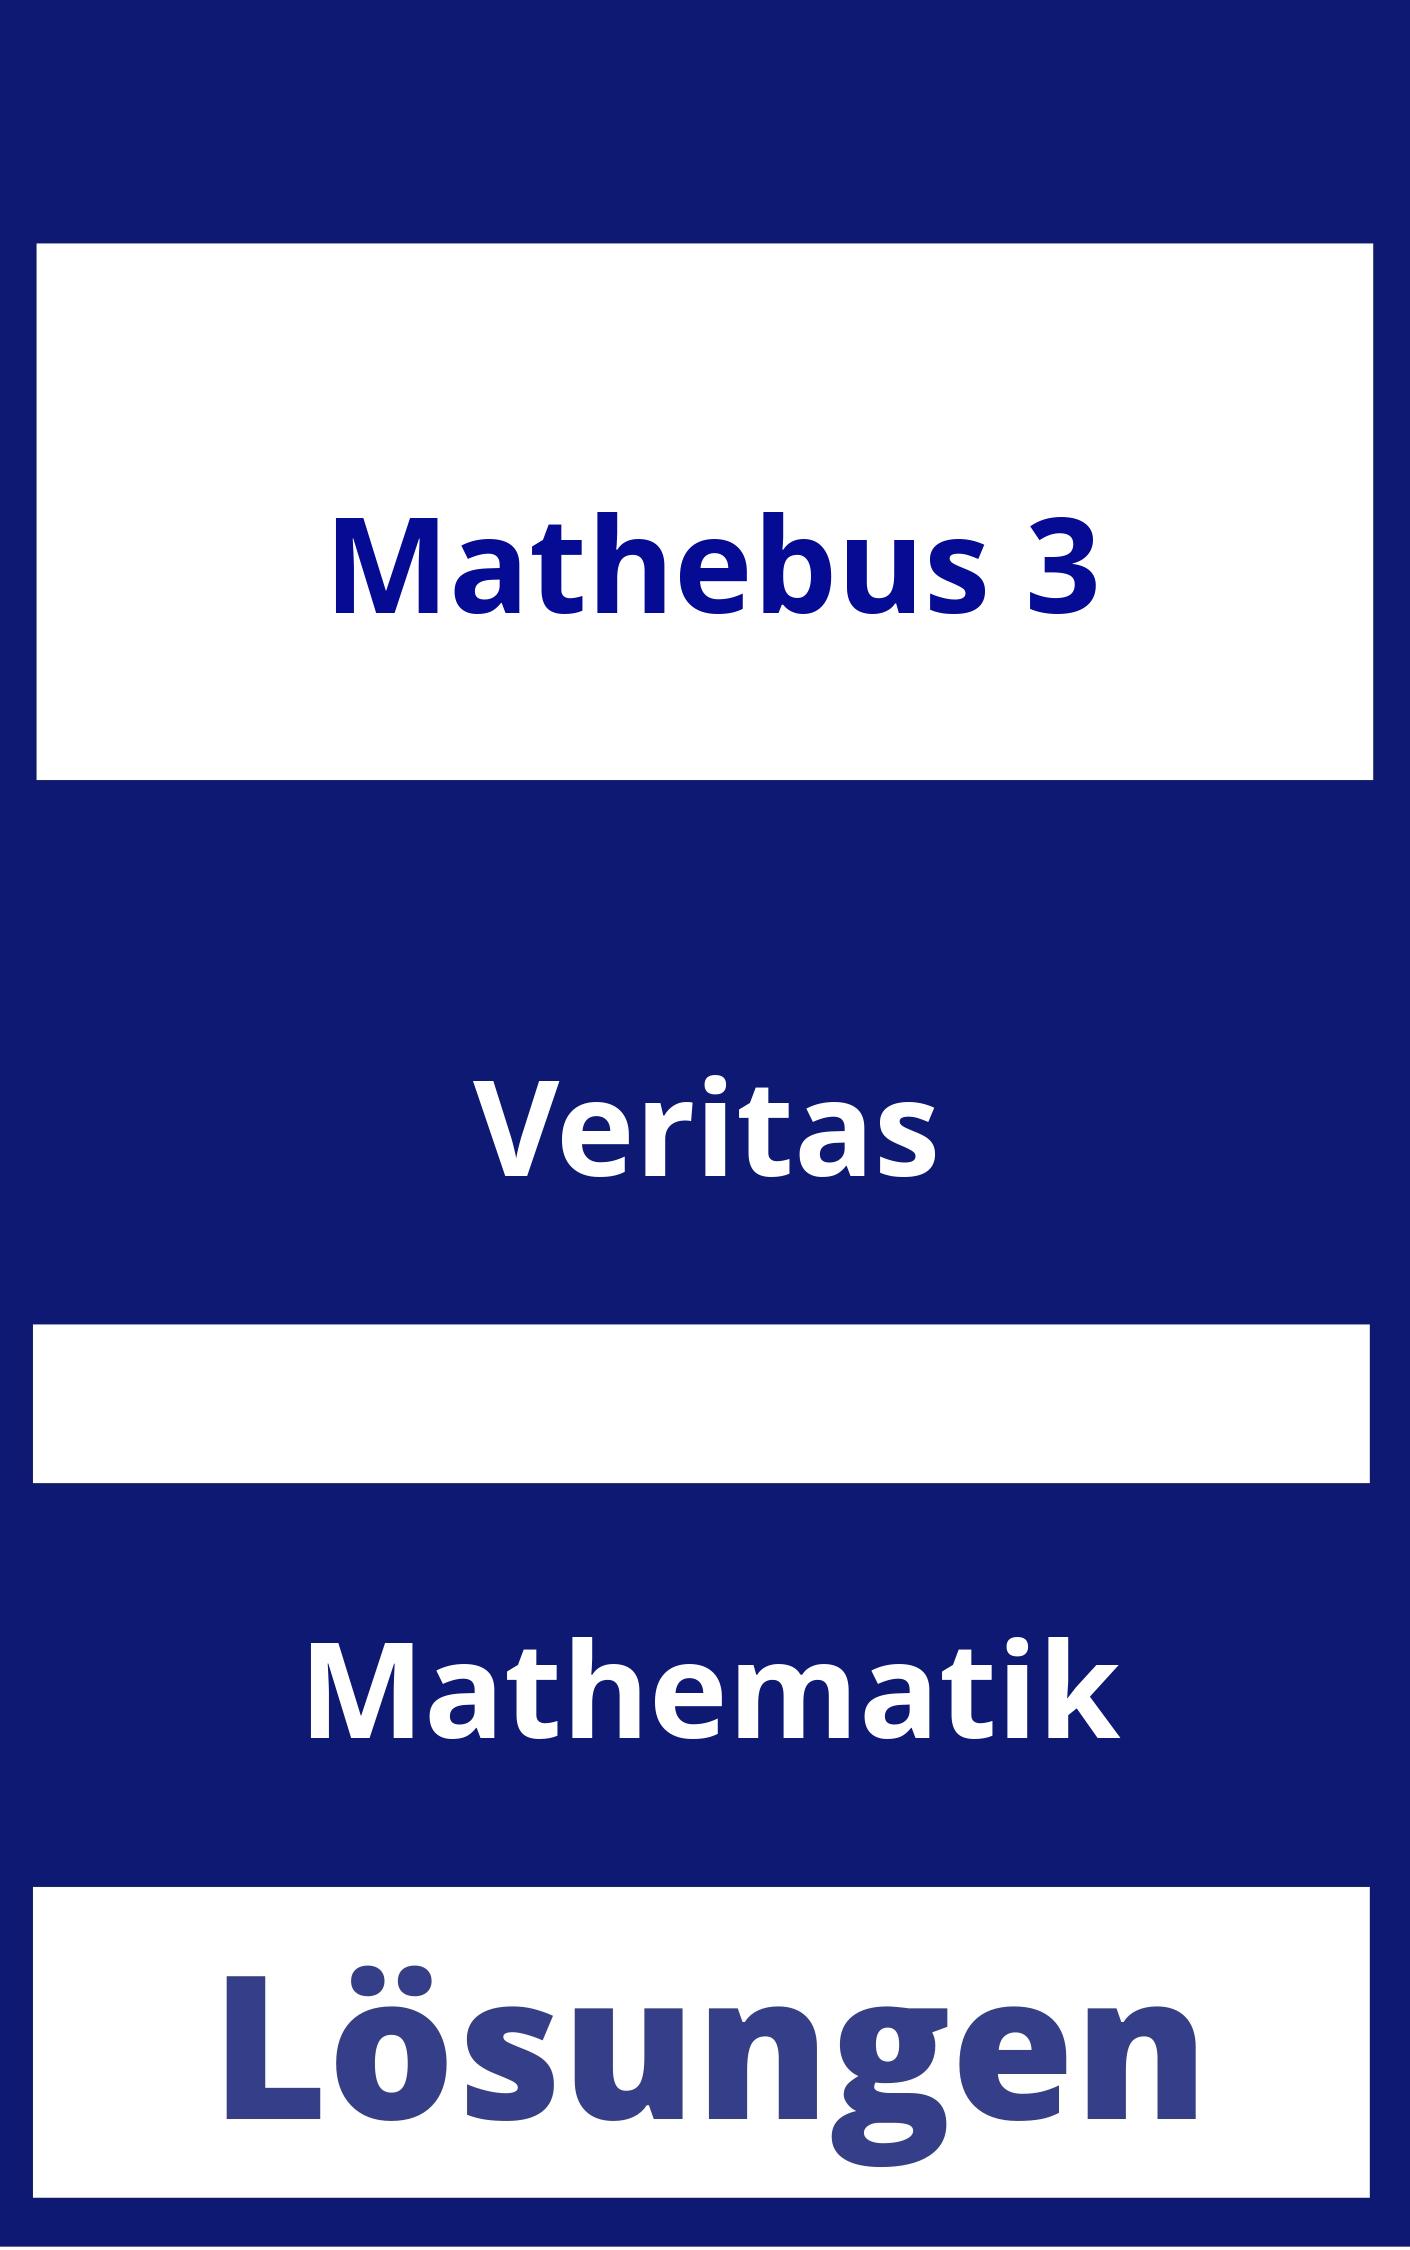 Mathebus 3 Lösungen PDF